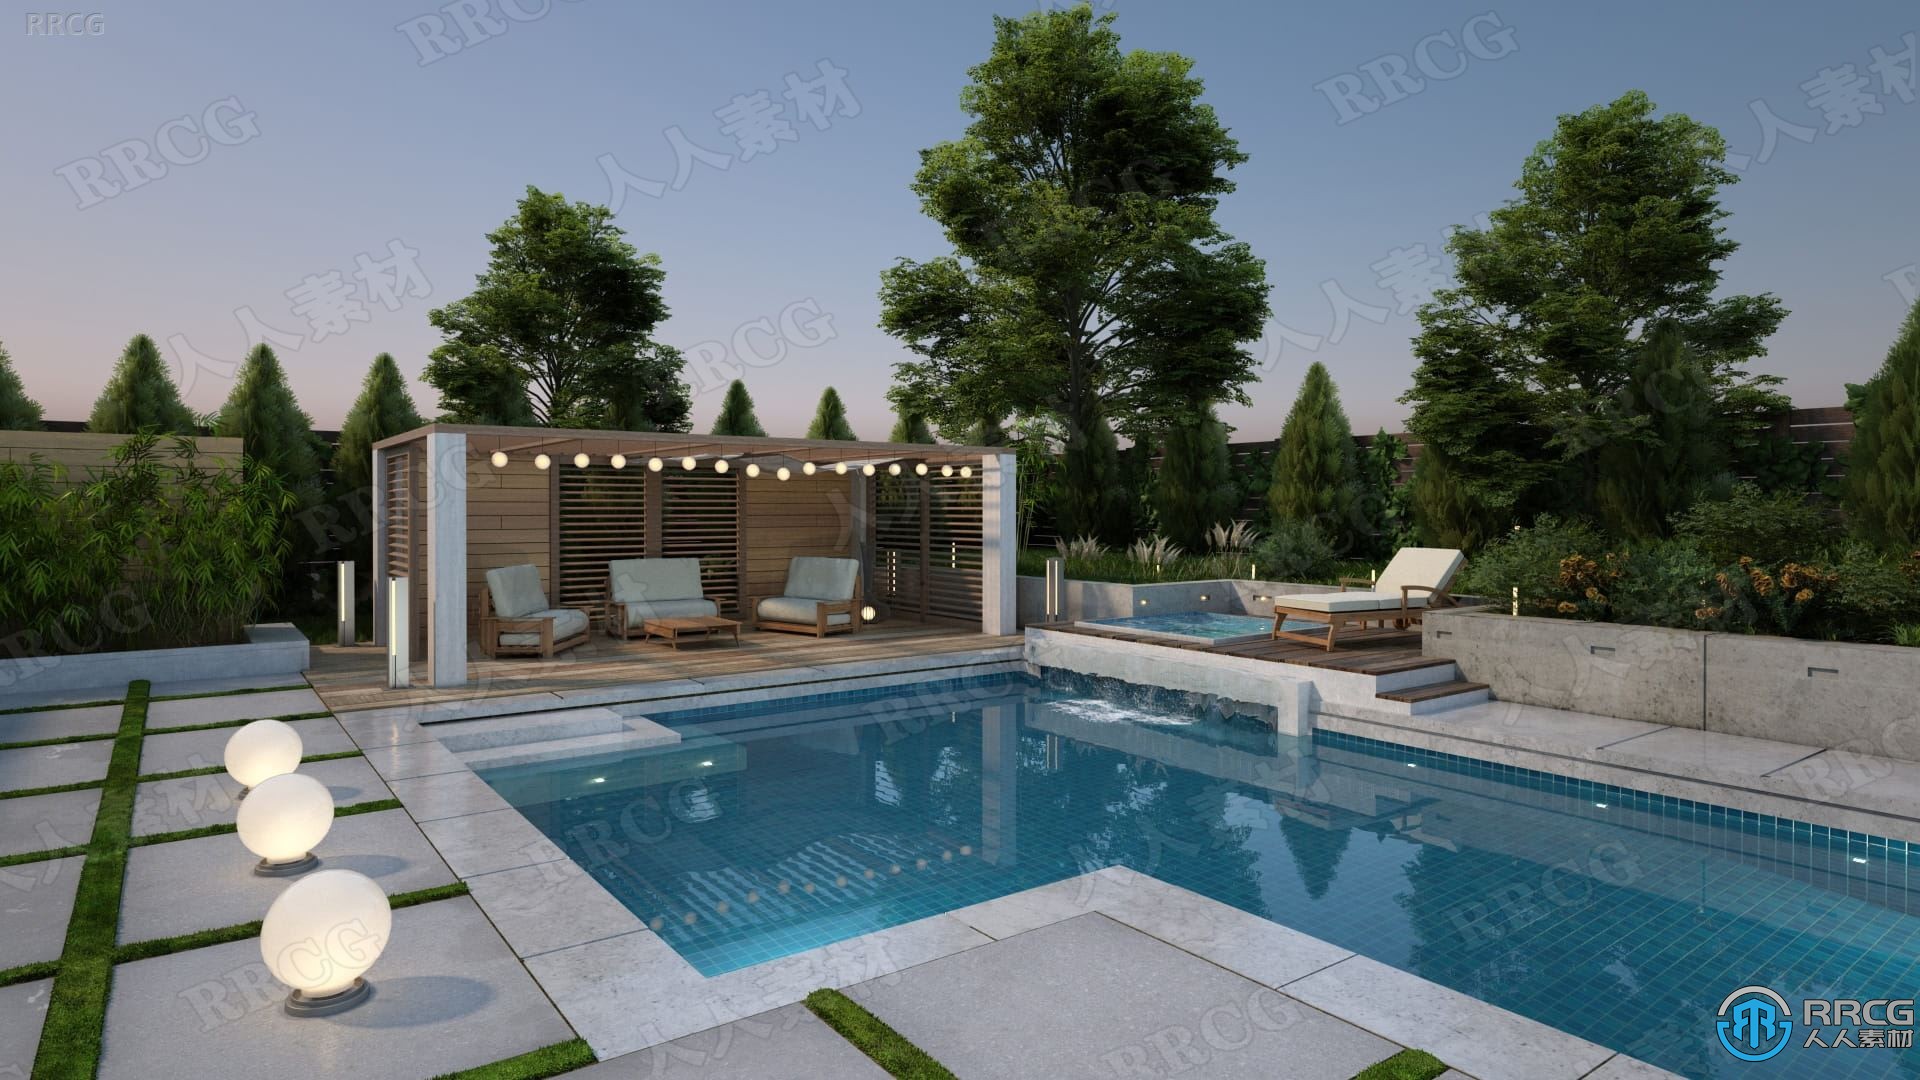 20组高品质现代住宅花园游泳池相关3D模型合集 Evermotion Archmodels第248季